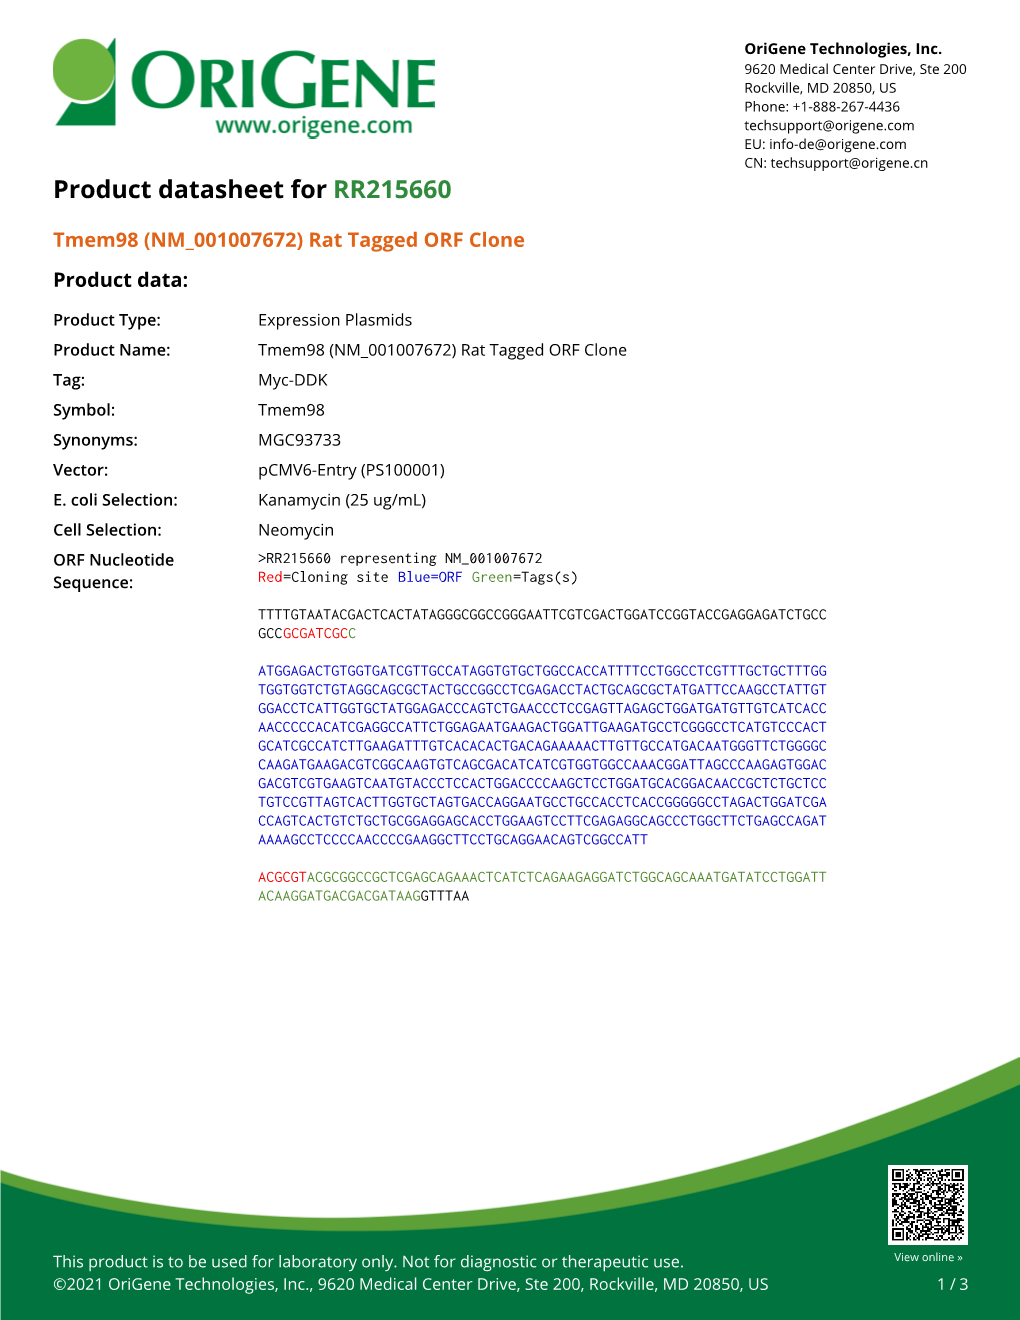 Tmem98 (NM 001007672) Rat Tagged ORF Clone – RR215660